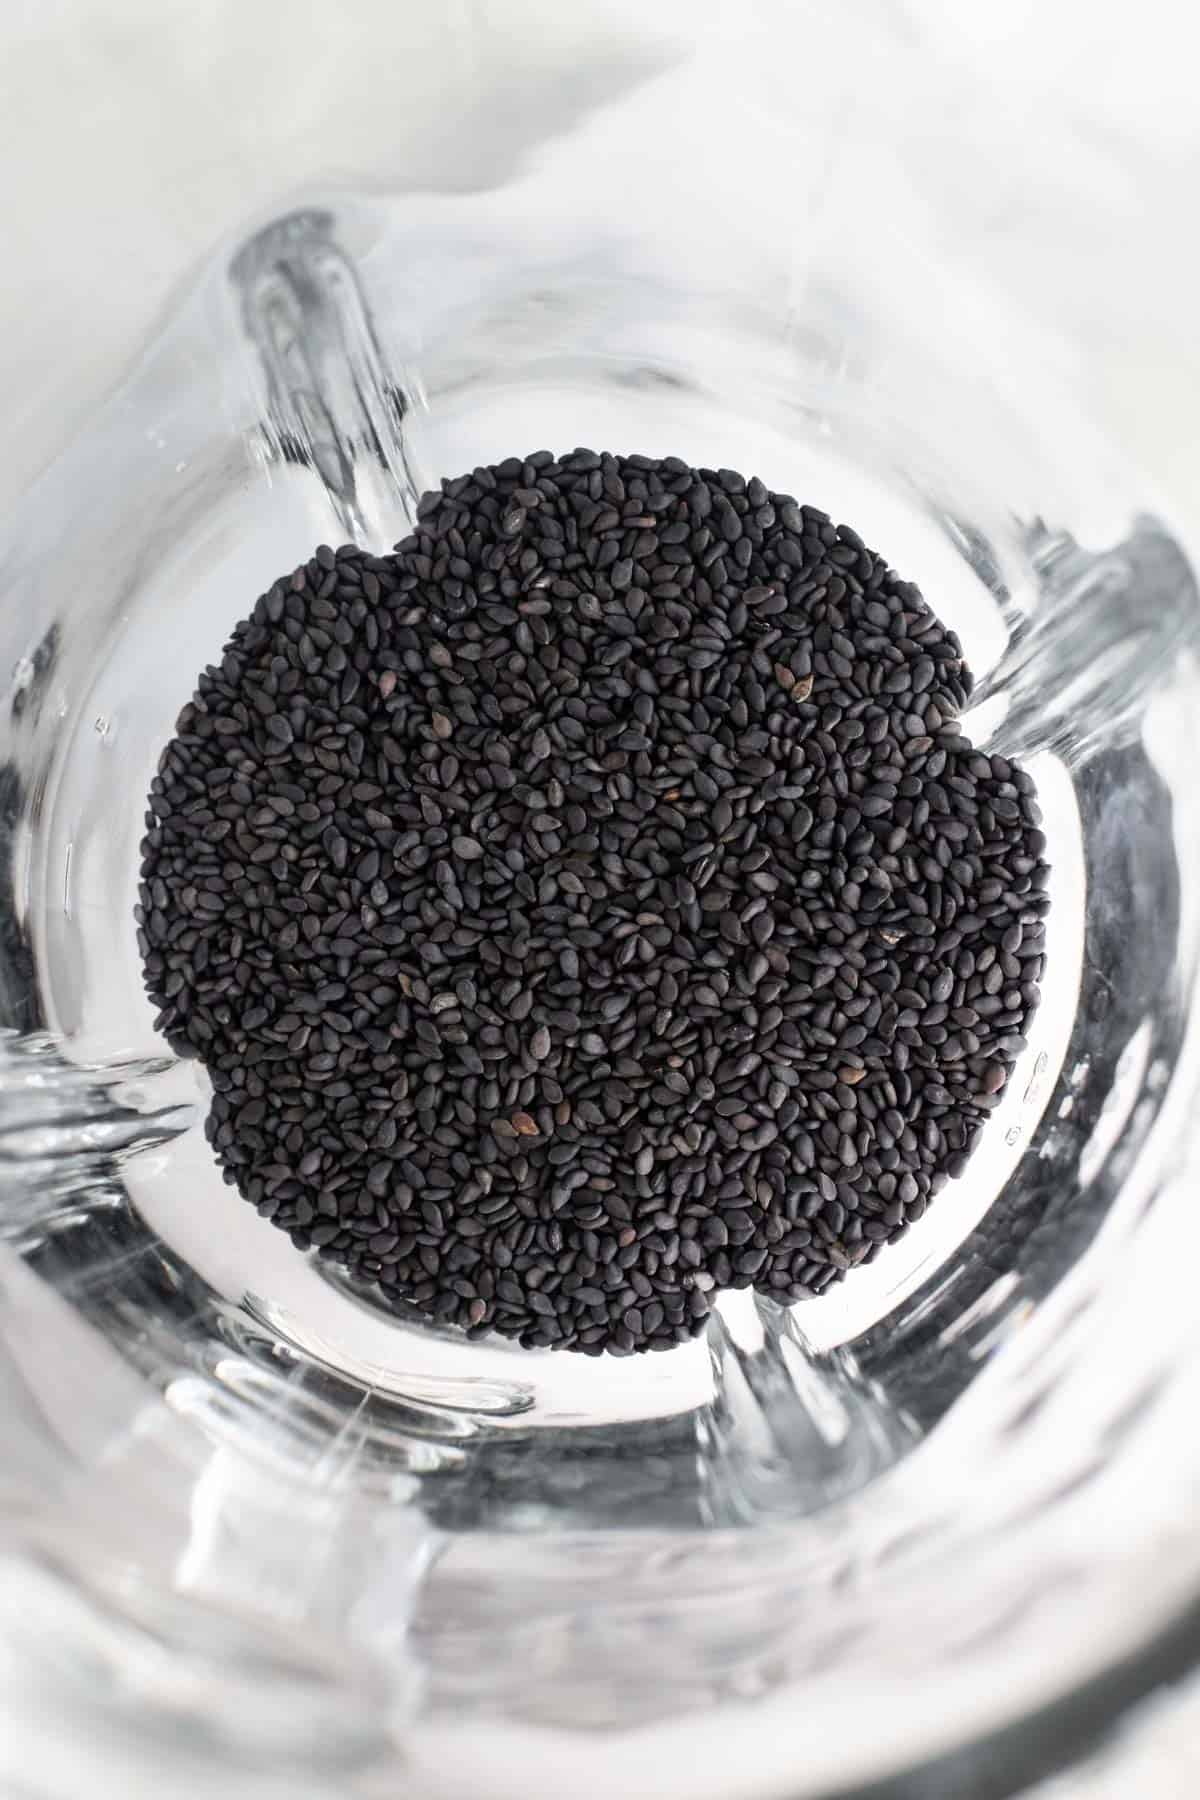 black sesame seeds in a glass blender jar